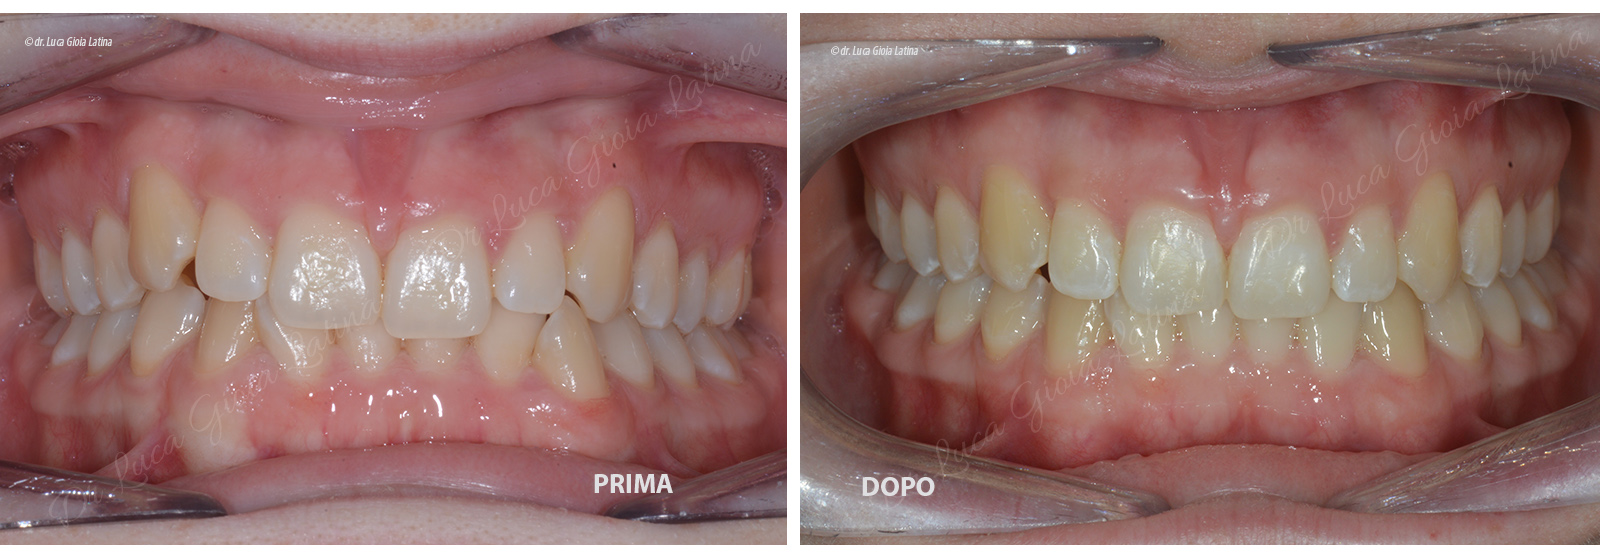 Ortodonzia Invisalign a Latina - Centro Odontoiatrico Gioia